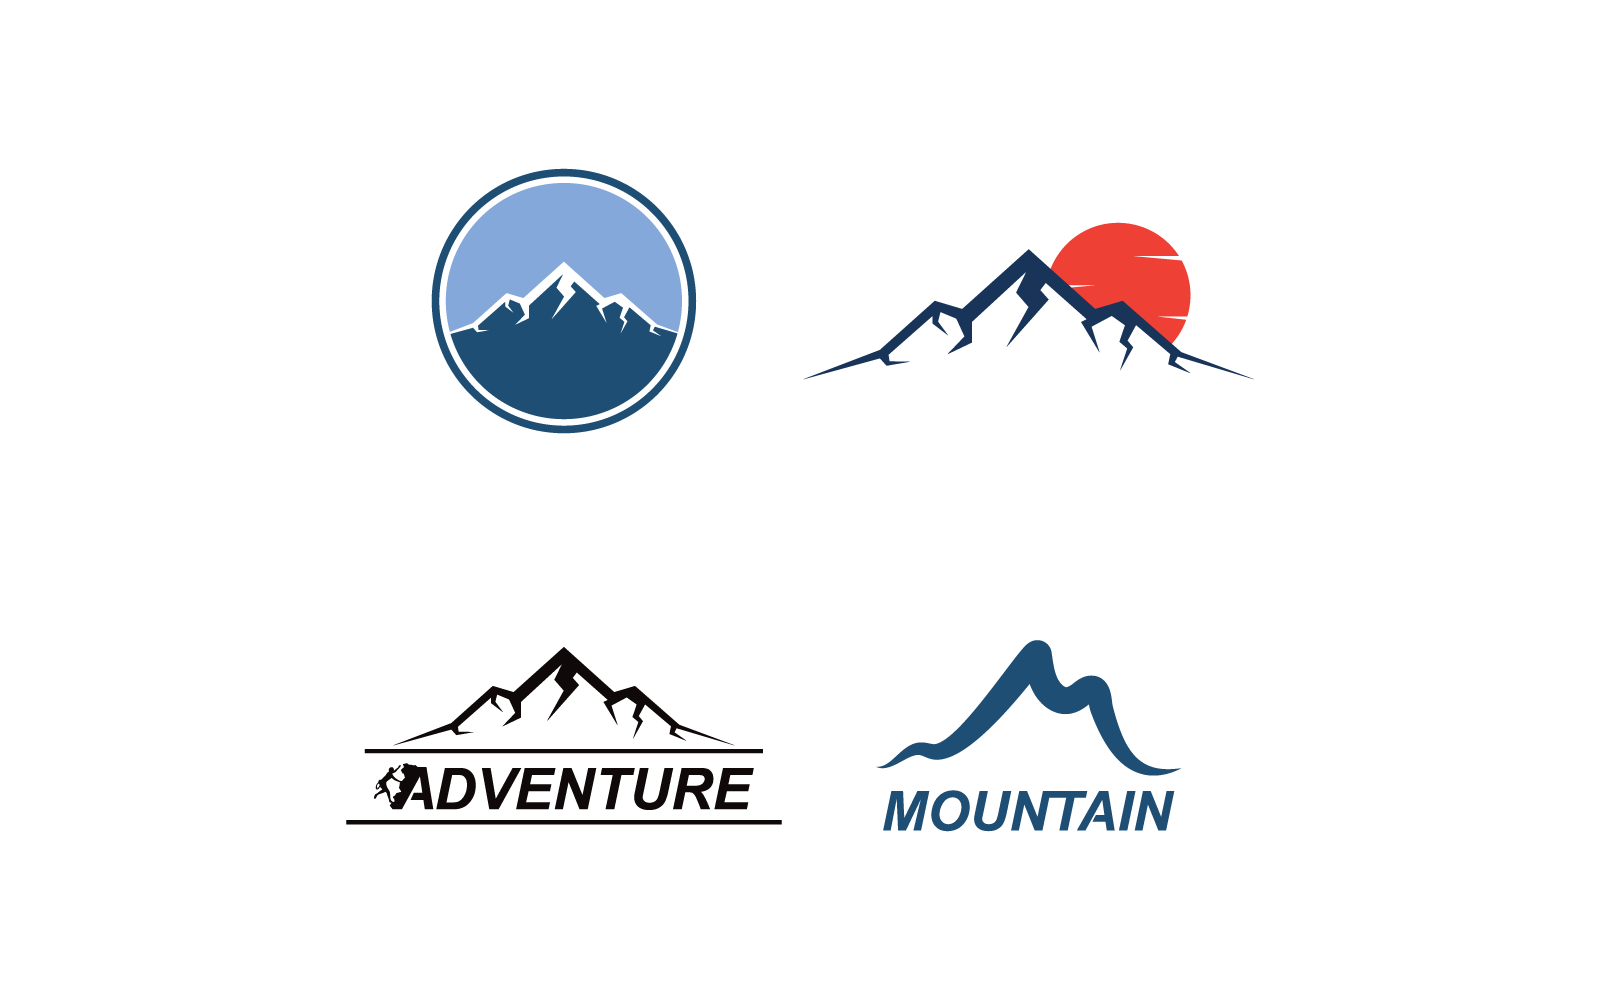 Mountain logo vector flat design template